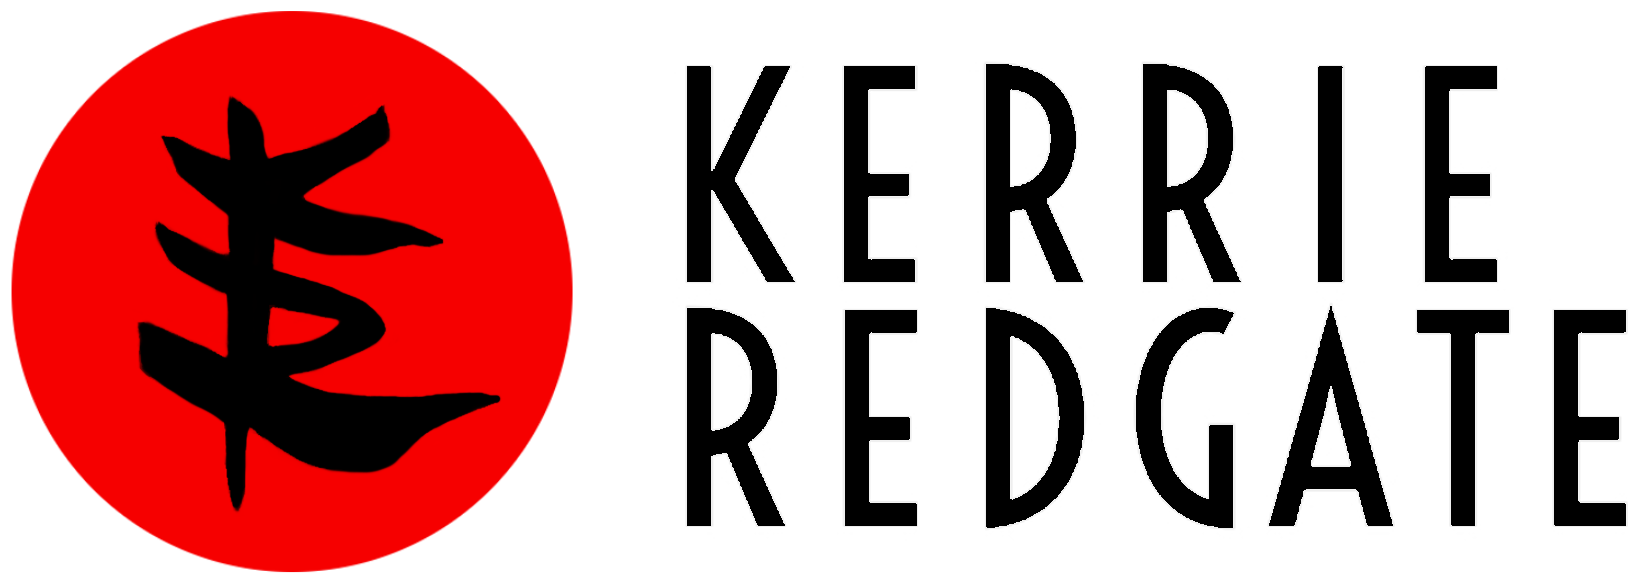 KR on red circle Kerrie Redgate | logomark